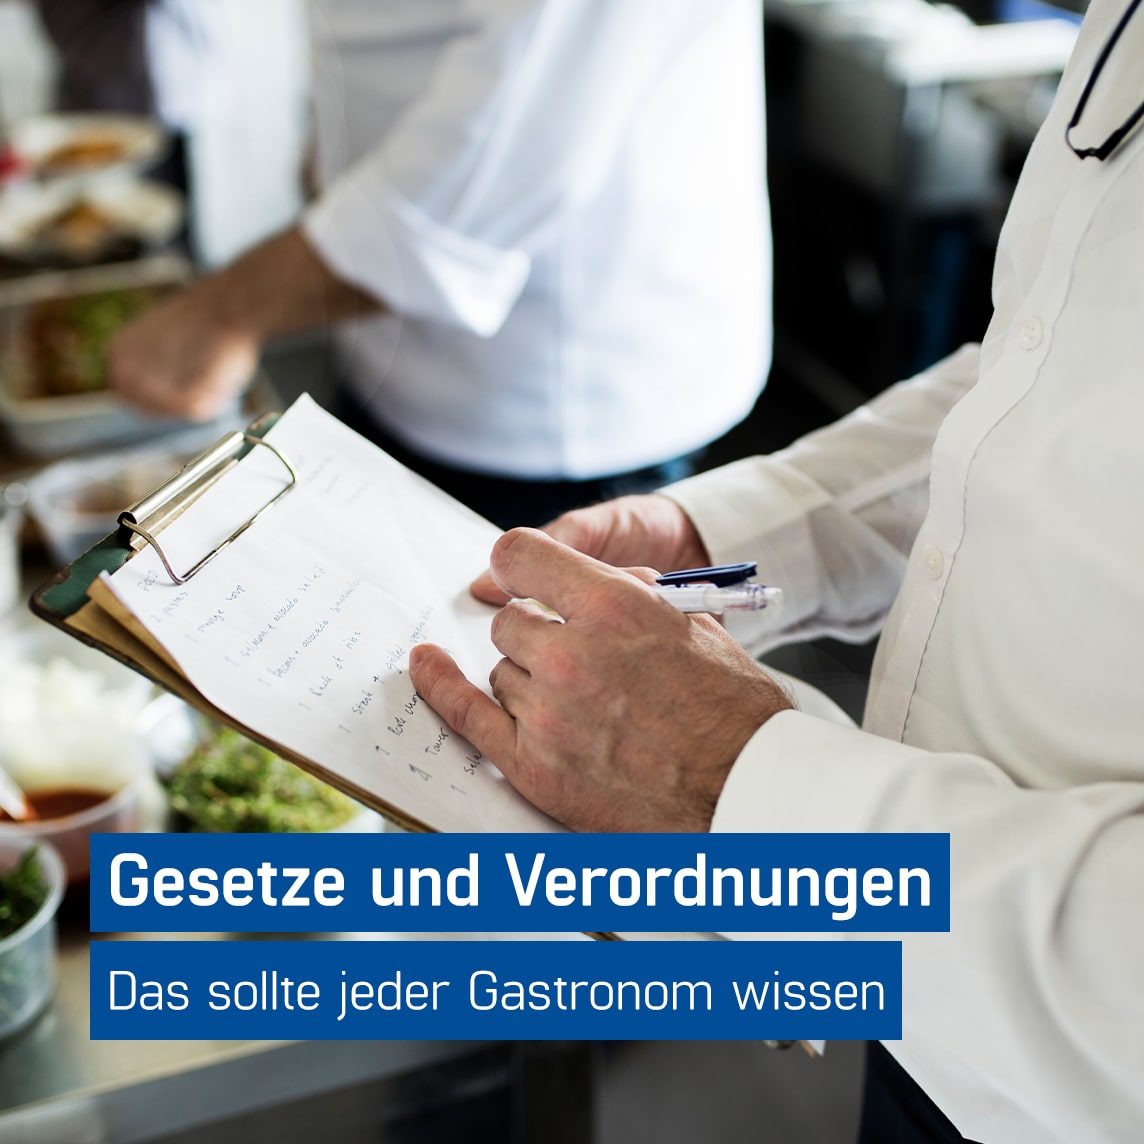 Kellner hält Klemmbrett in der Hand und hakt Checkliste mit Gastronomie Gesetzen ab, GastroSoft GmbH